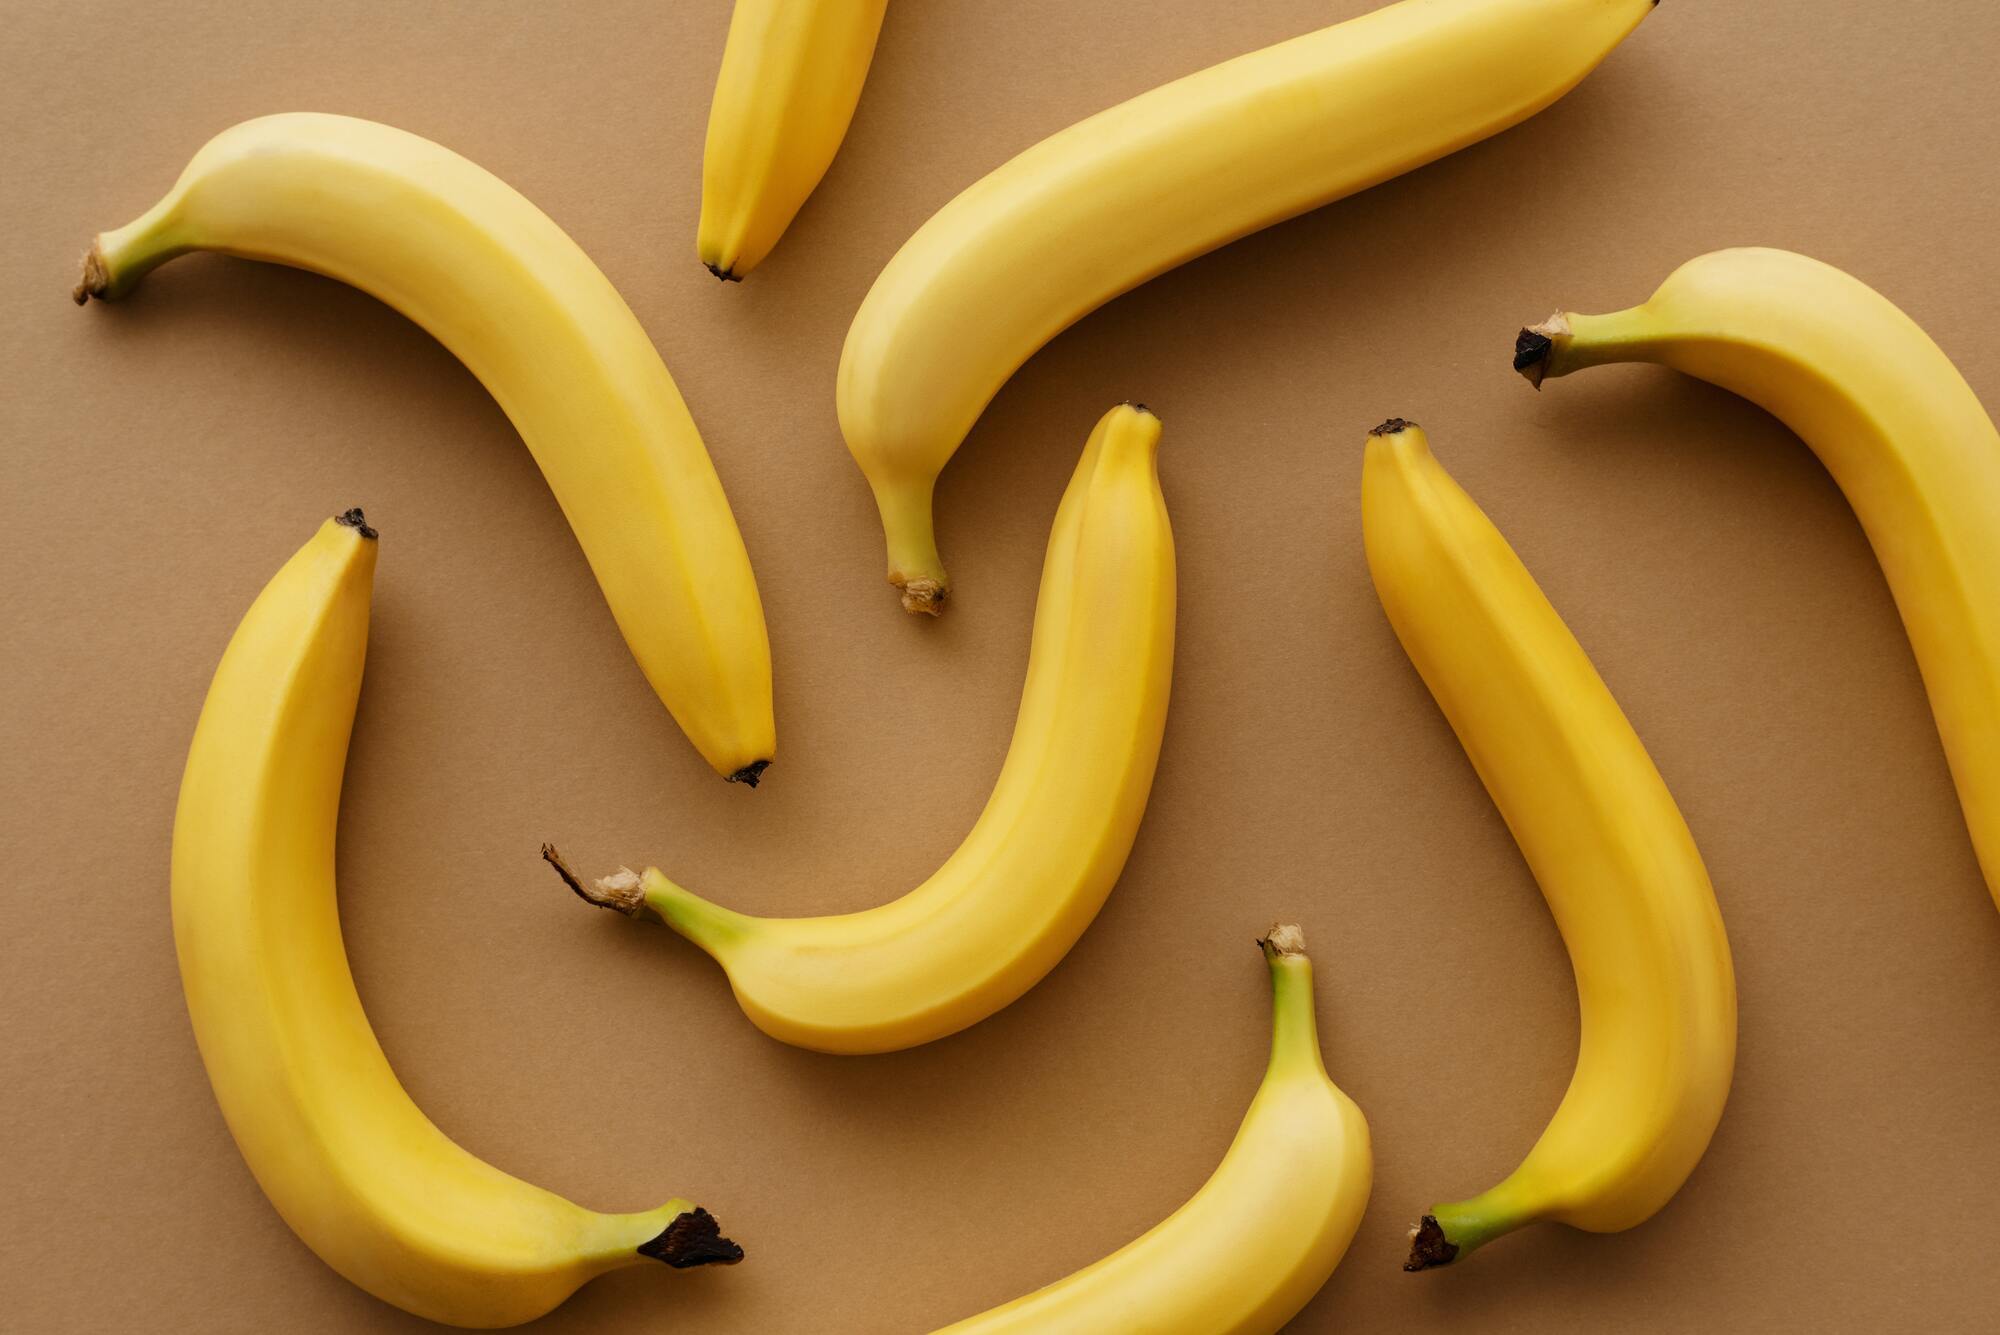 Положите зеленые бананы в микроволновку